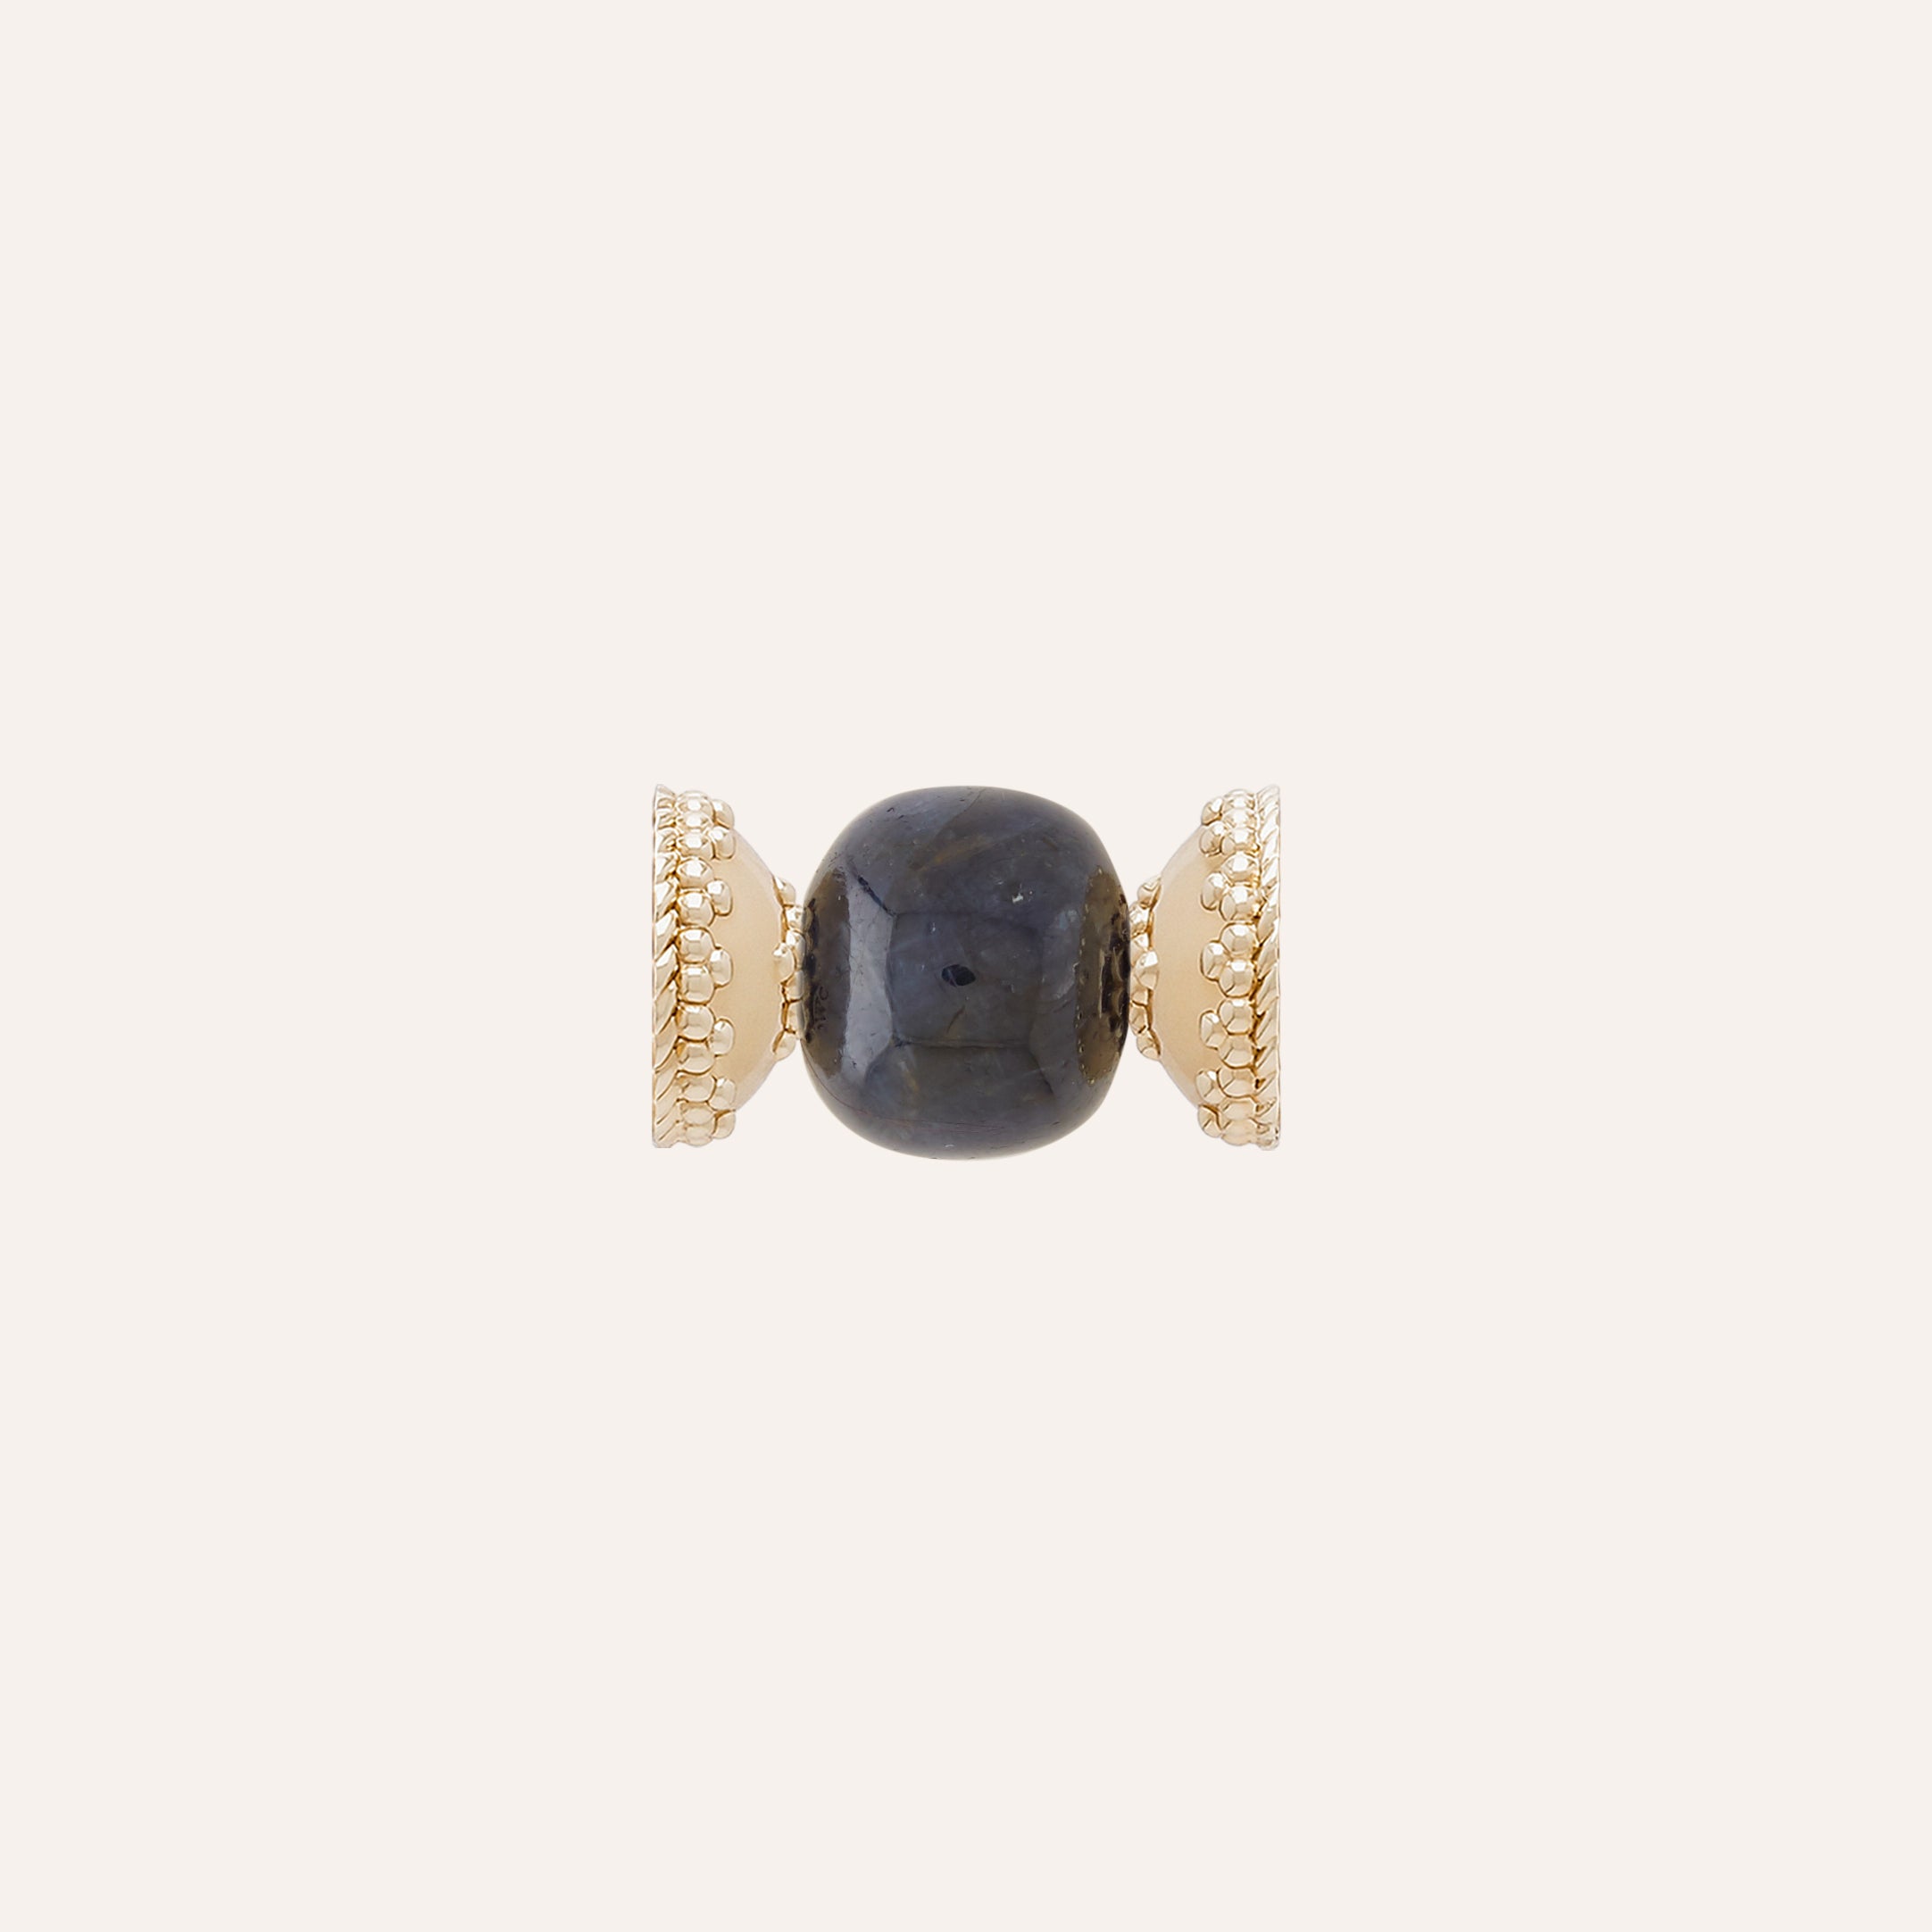 Small Dark Blue Sapphire Rondelle Centerpiece